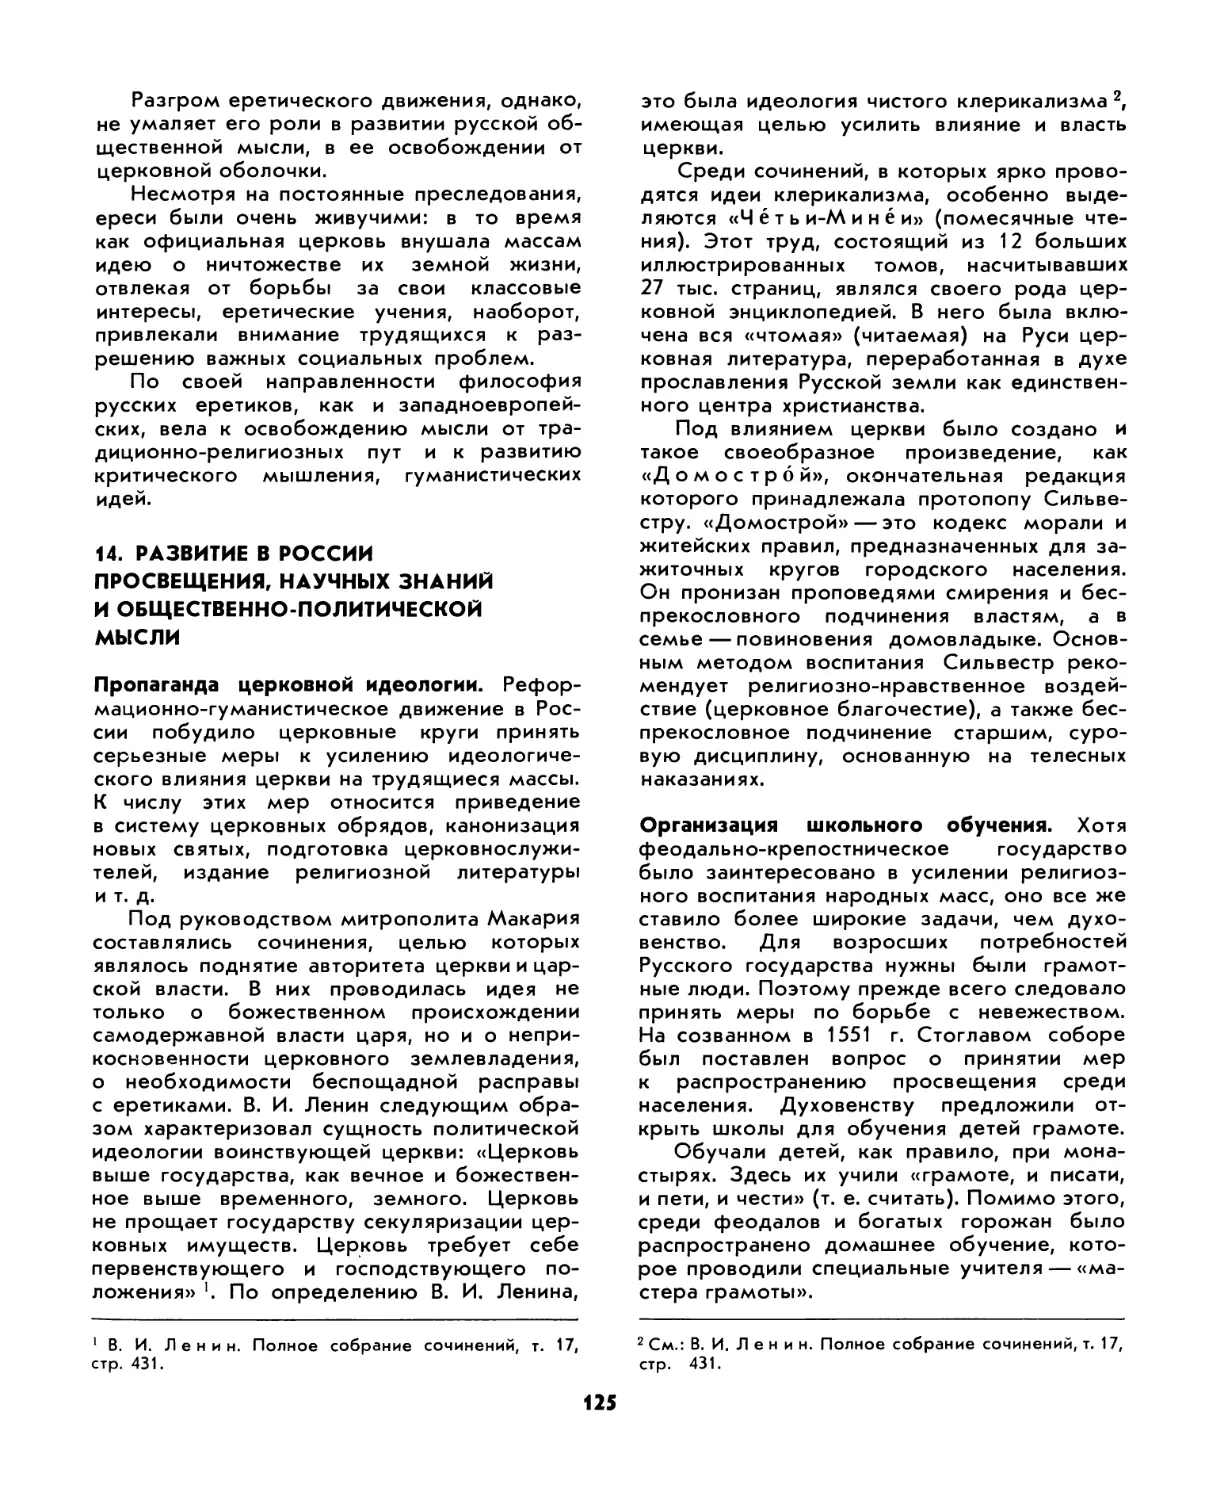 14. Развитие в России просвещения, научных знаний и общественно-политической мысли